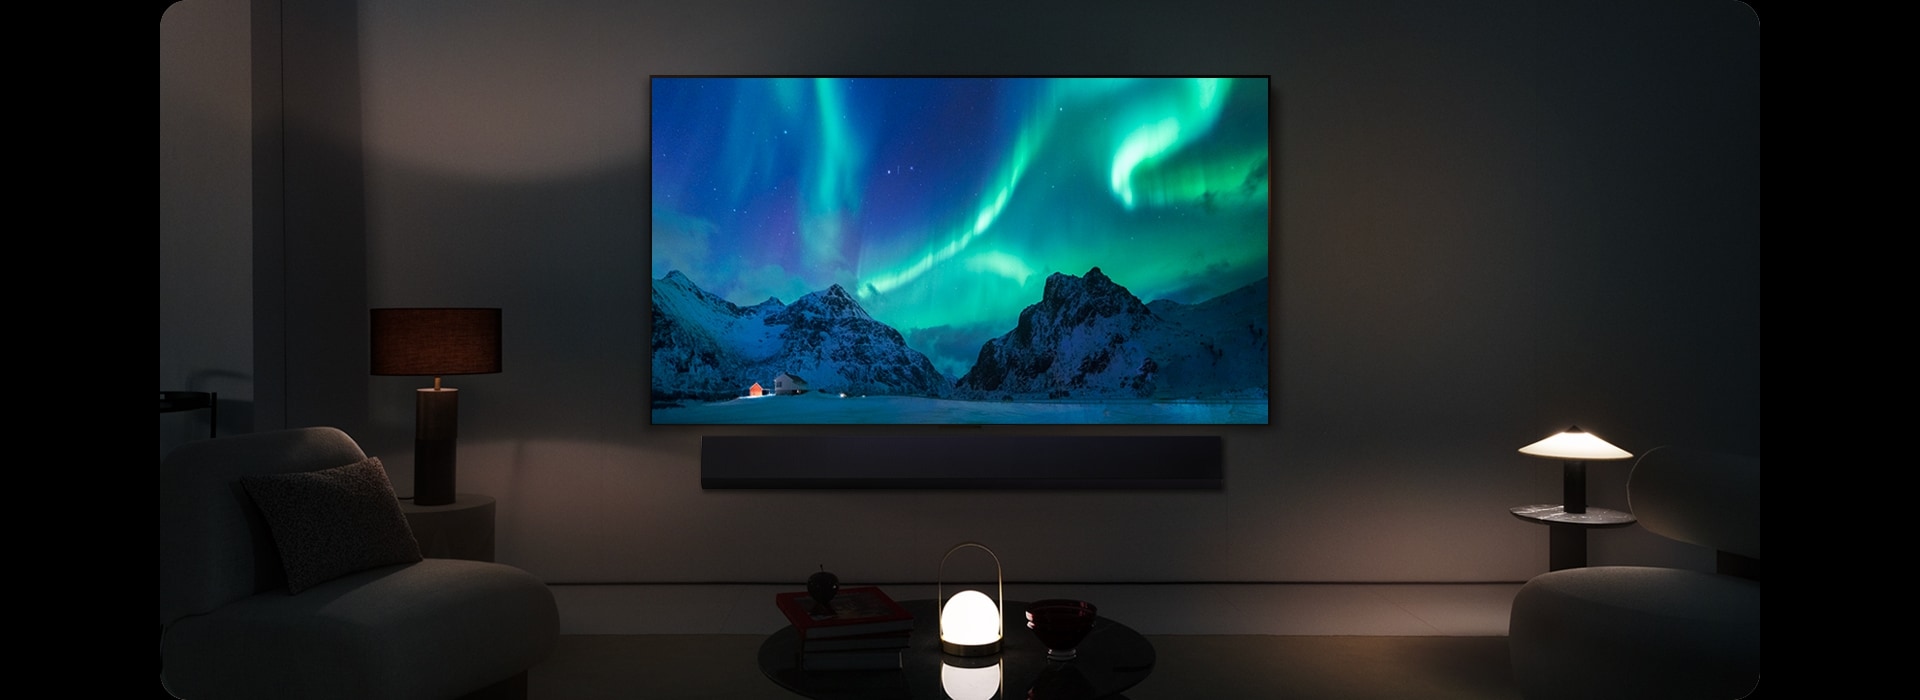 Un TV LG OLED e una soundbar LG in uno spazio abitativo moderno durante la notte. L'immagine sullo schermo dell'aurora boreale viene visualizzata con i livelli di luminosità ideali.